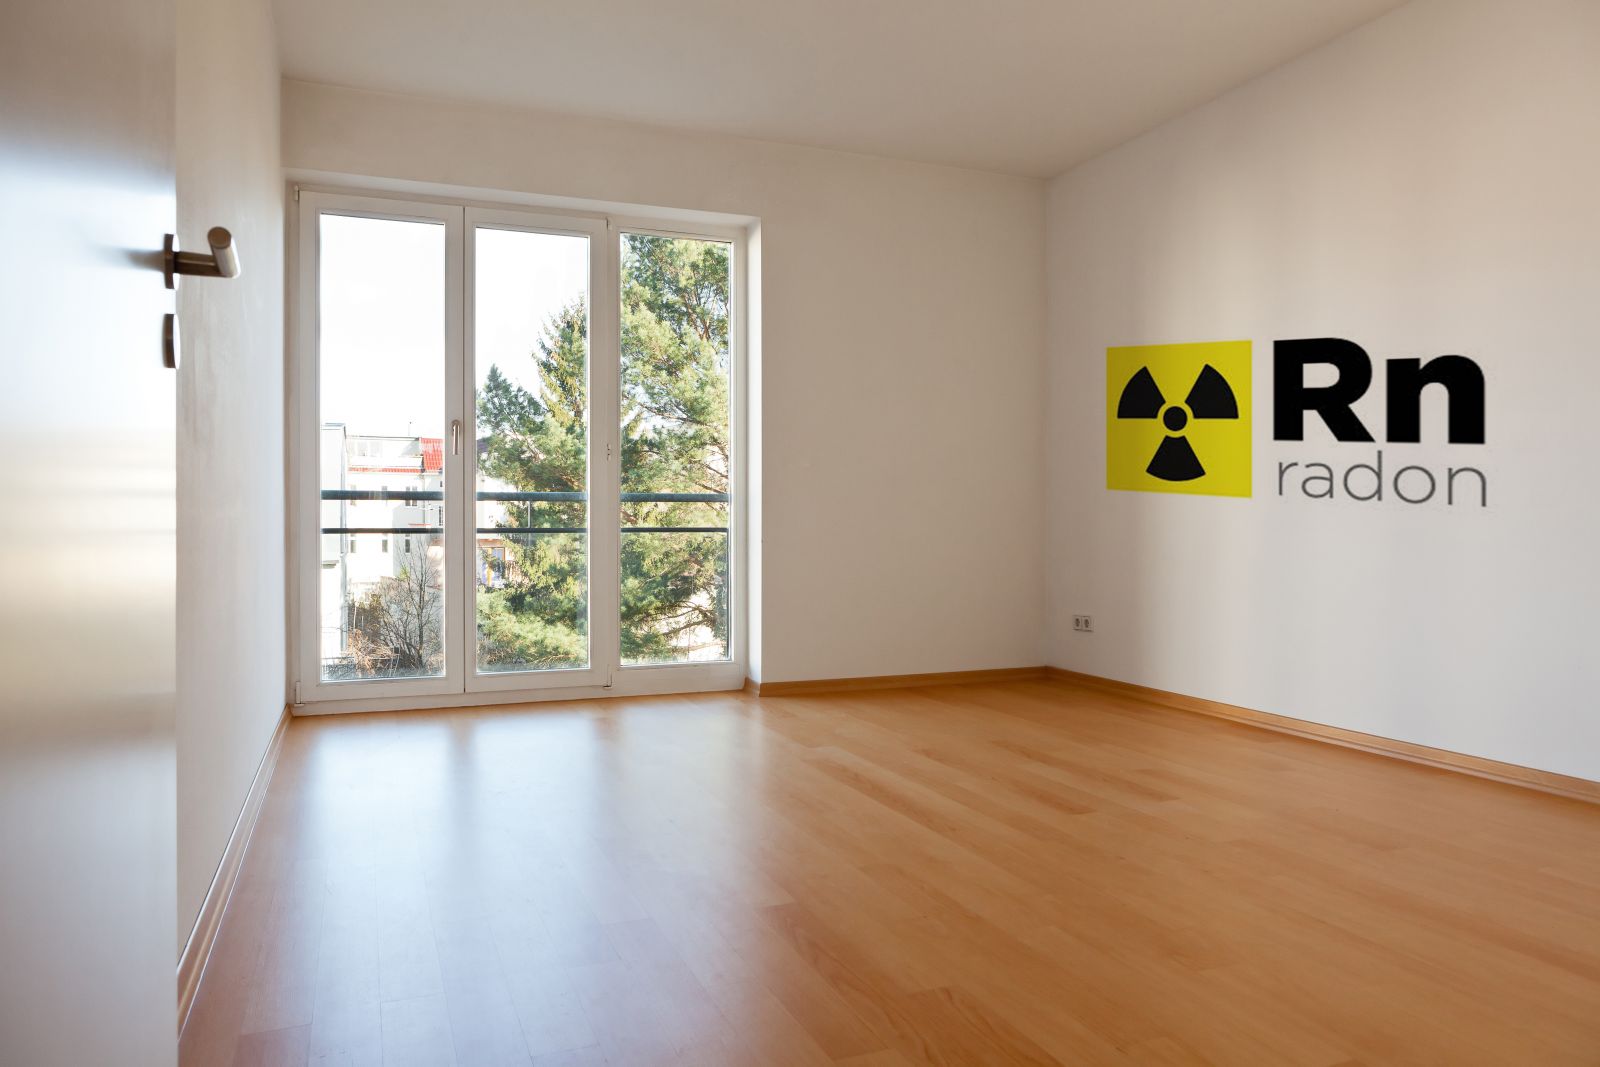 Comment se protéger de l’exposition au radon dans les logements ?